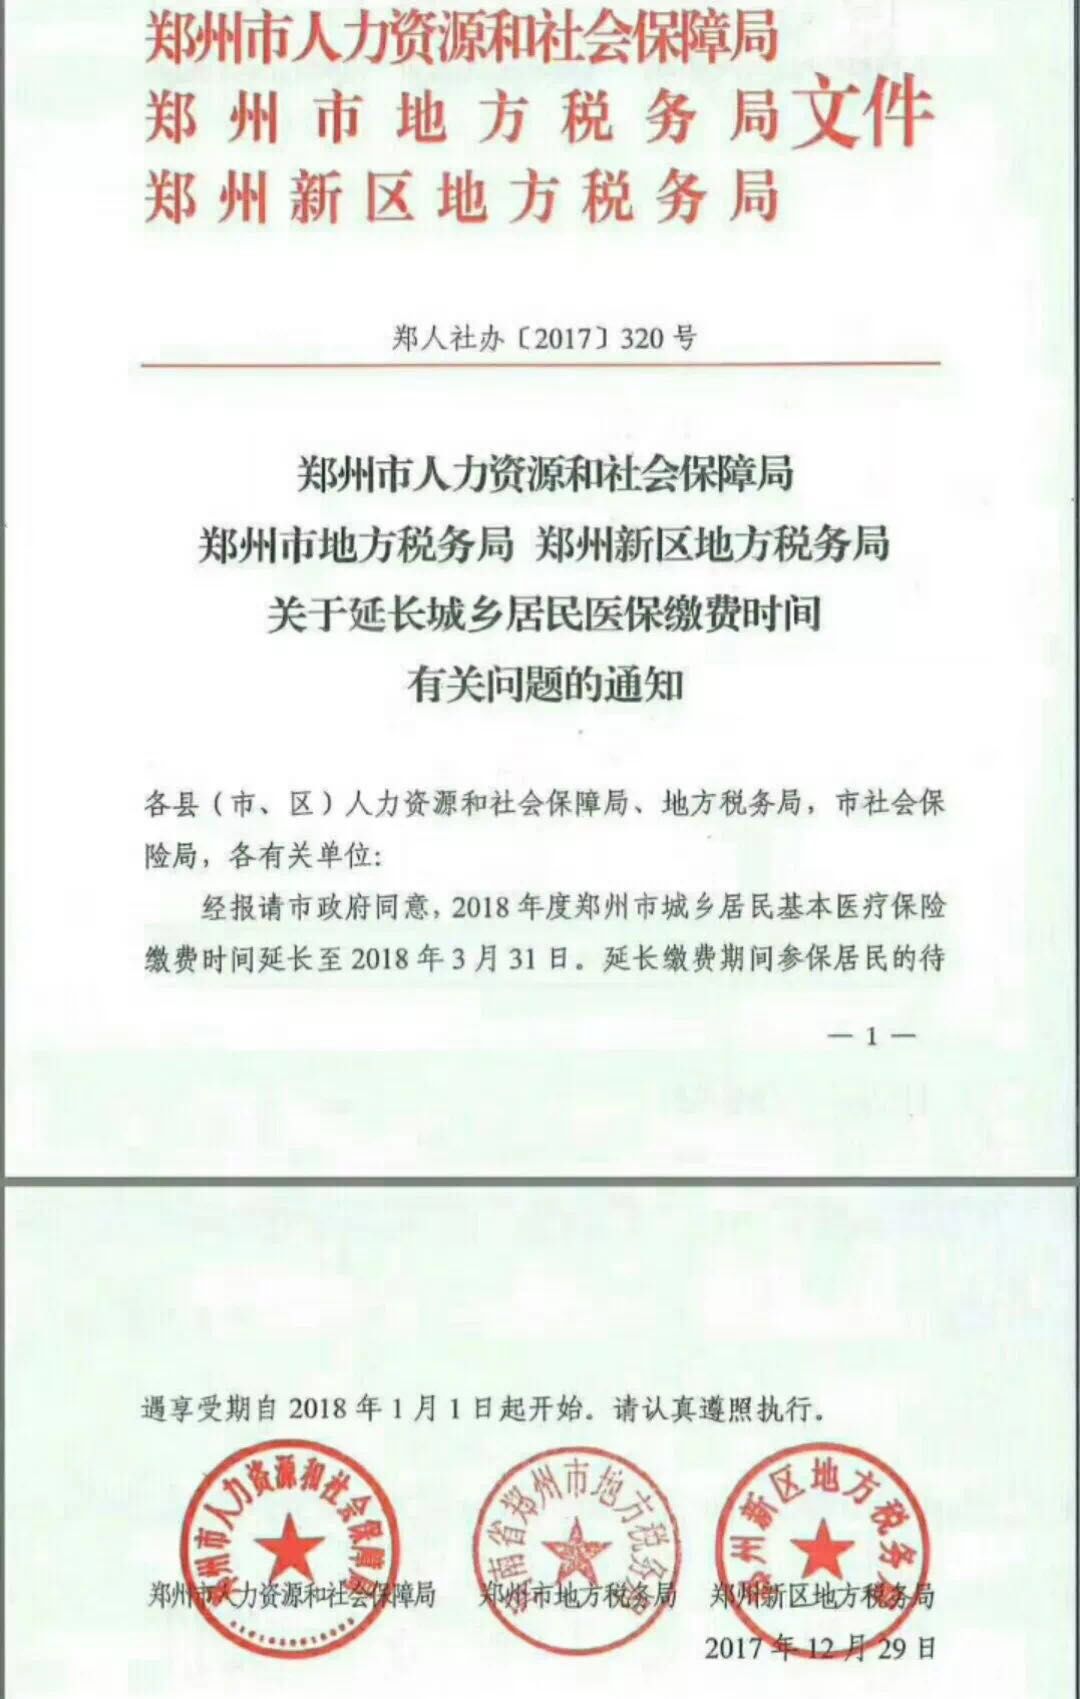 郑州市2018年度城乡居民医保缴费期延长至2018年3月31日 